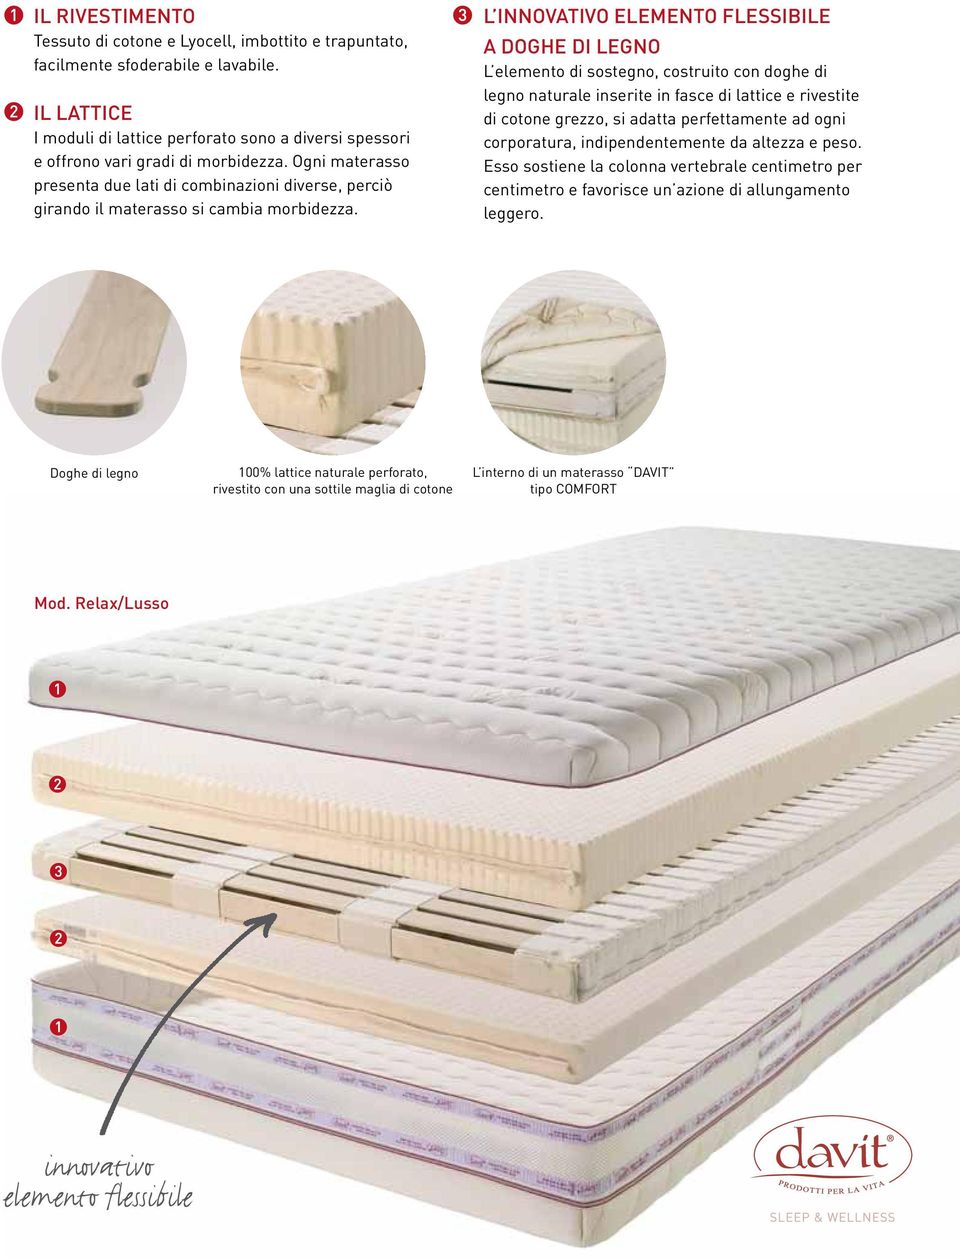 Ogni materasso presenta due lati di combinazioni diverse, perciò girando il materasso si cambia morbidezza.